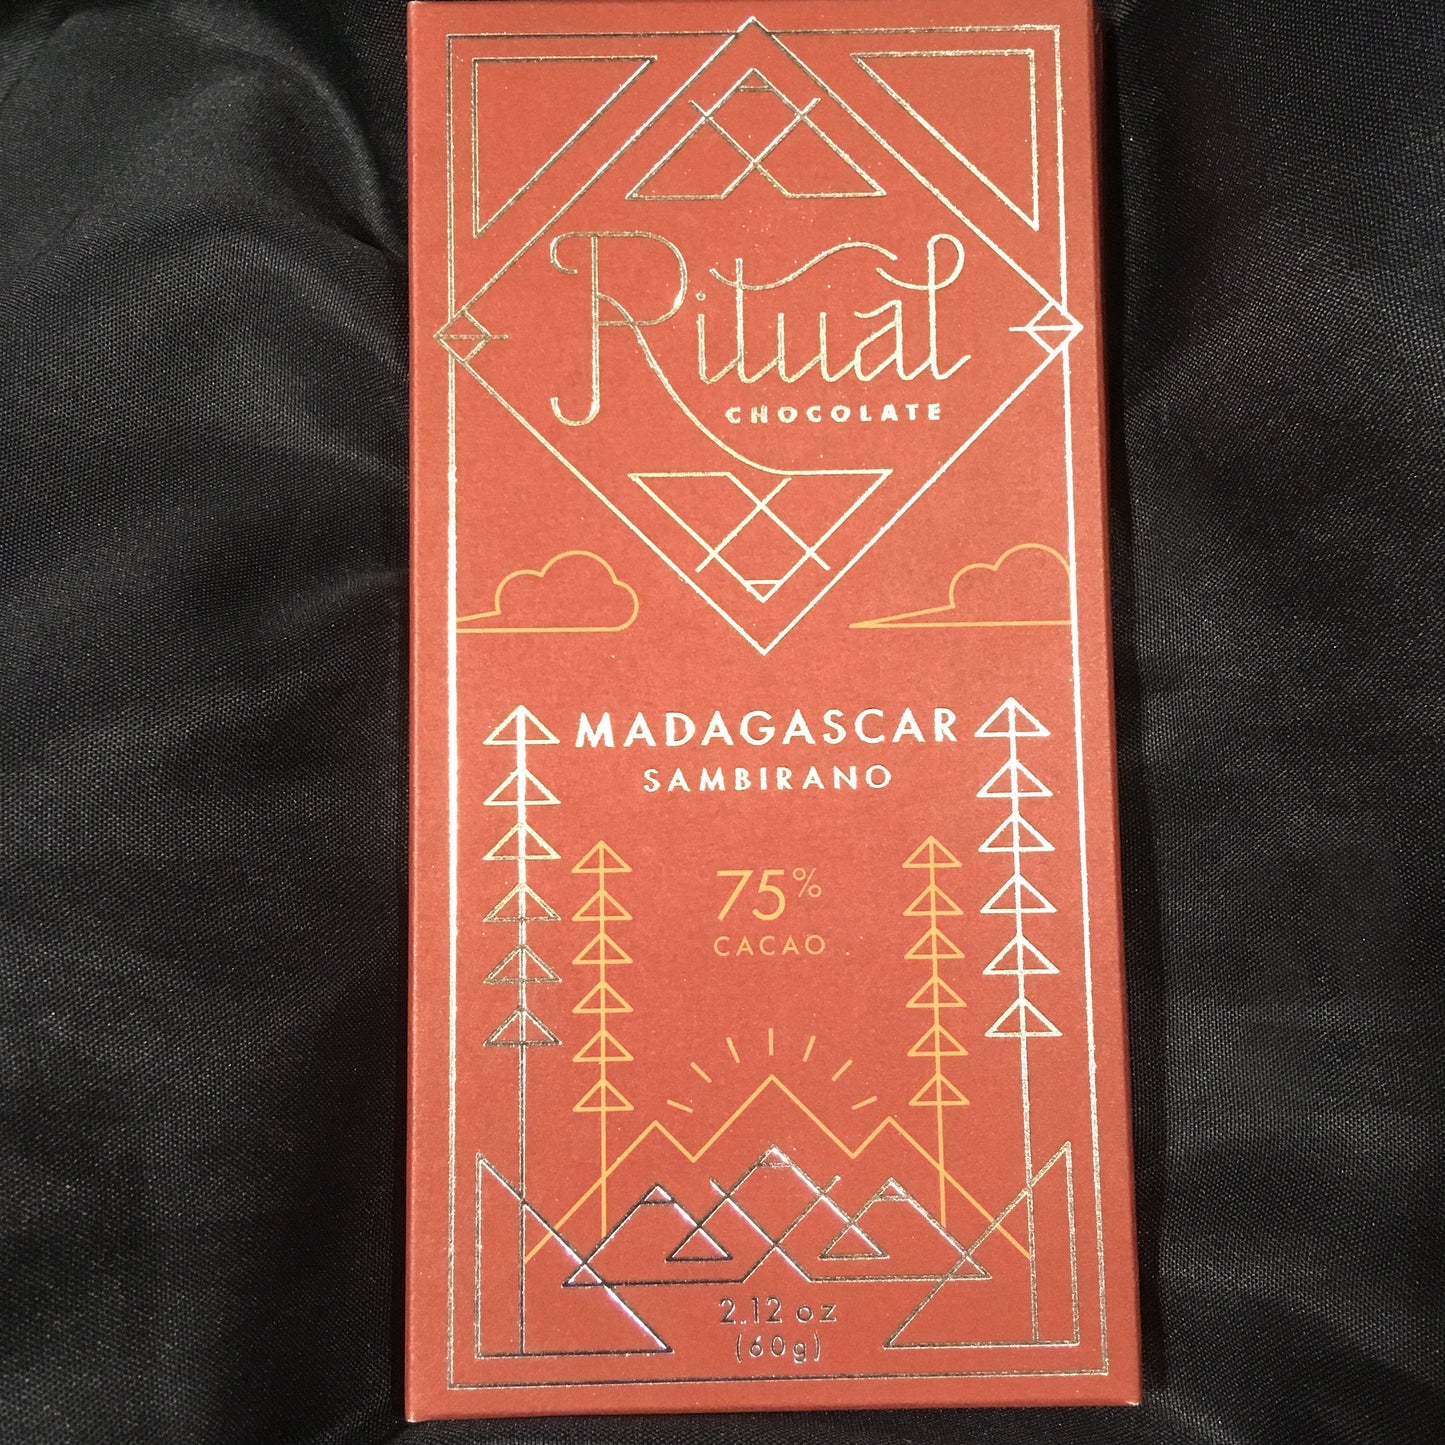 Ritual - Madagascar 75%